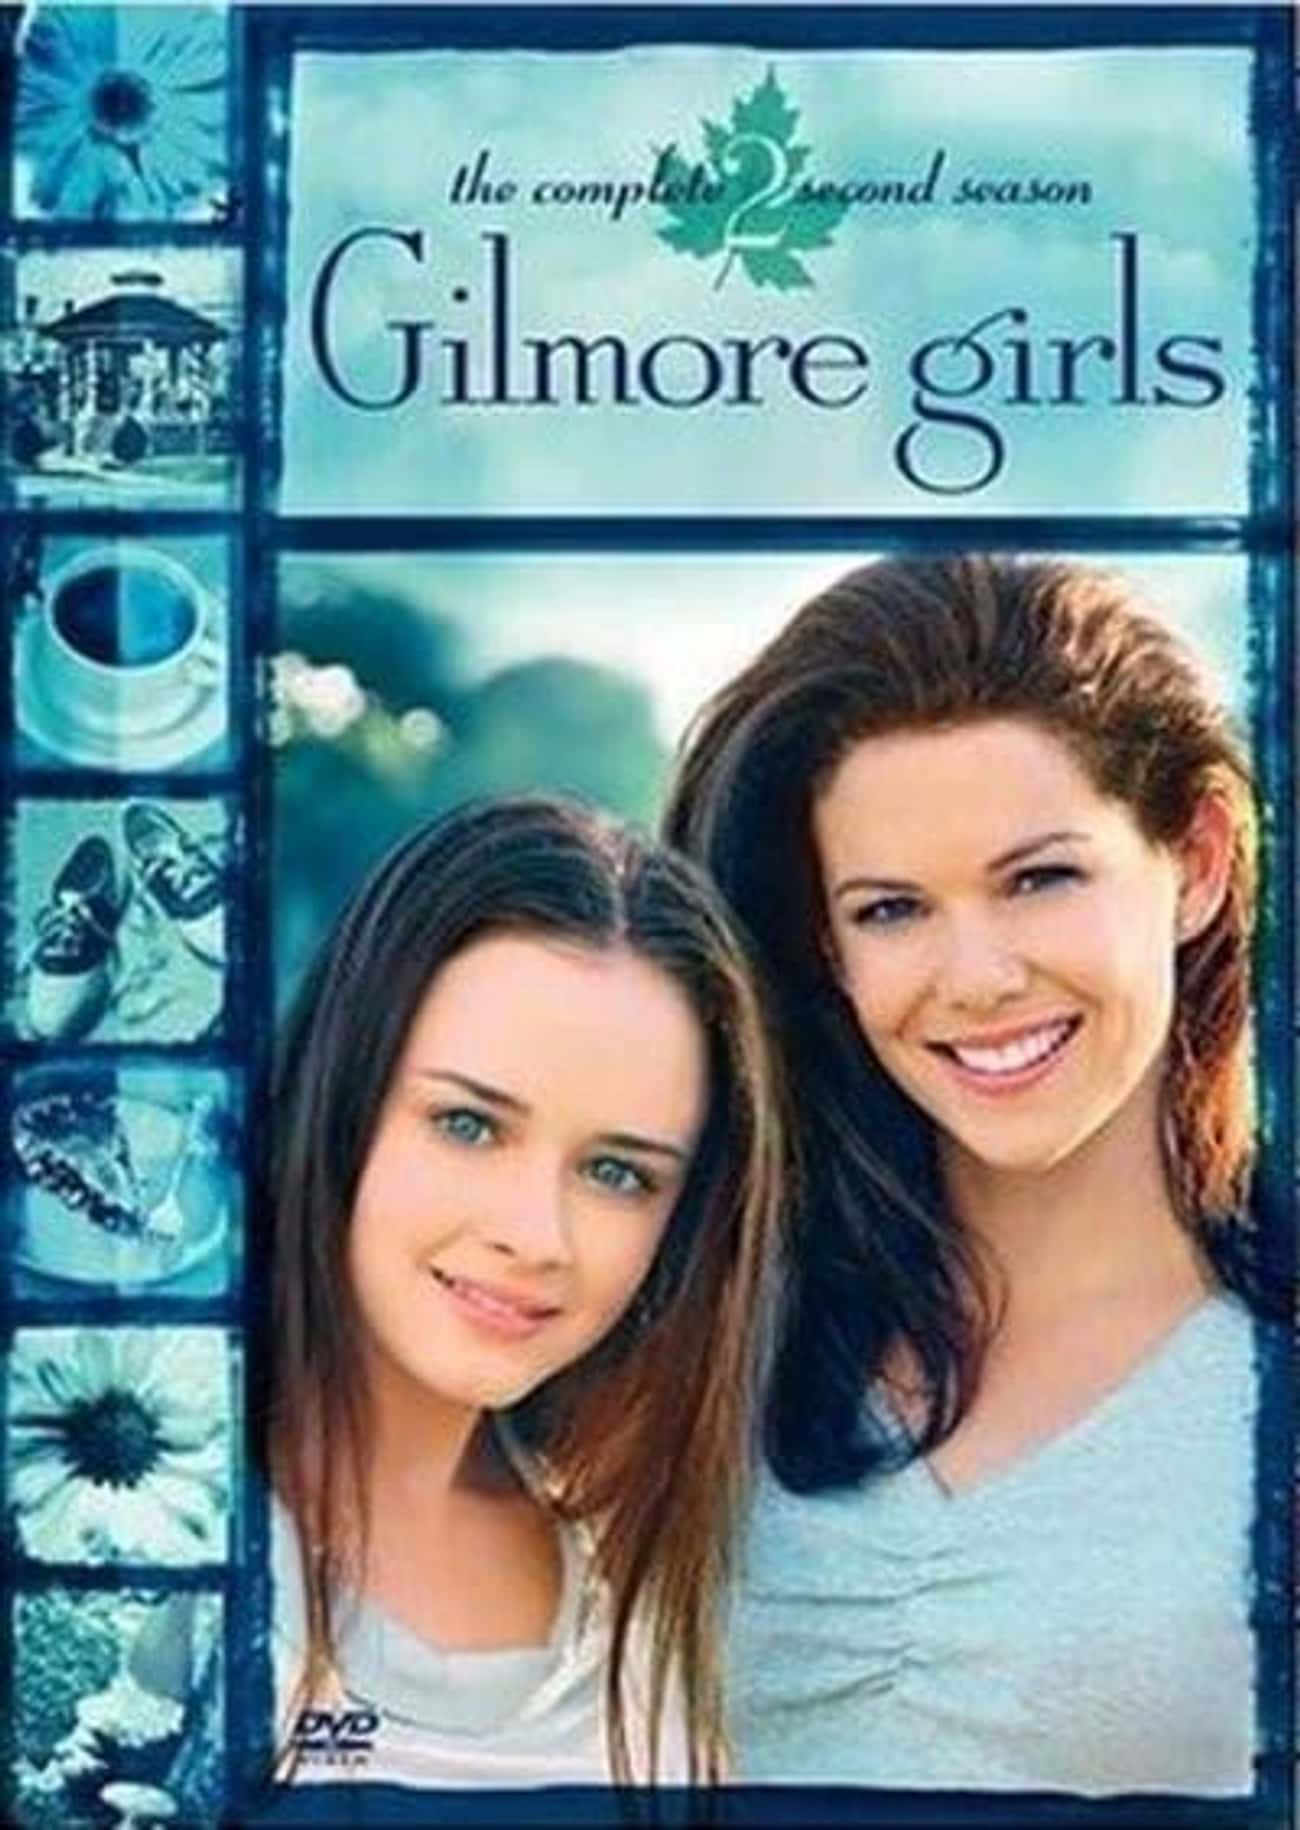 Gilmore Girls - Season 2